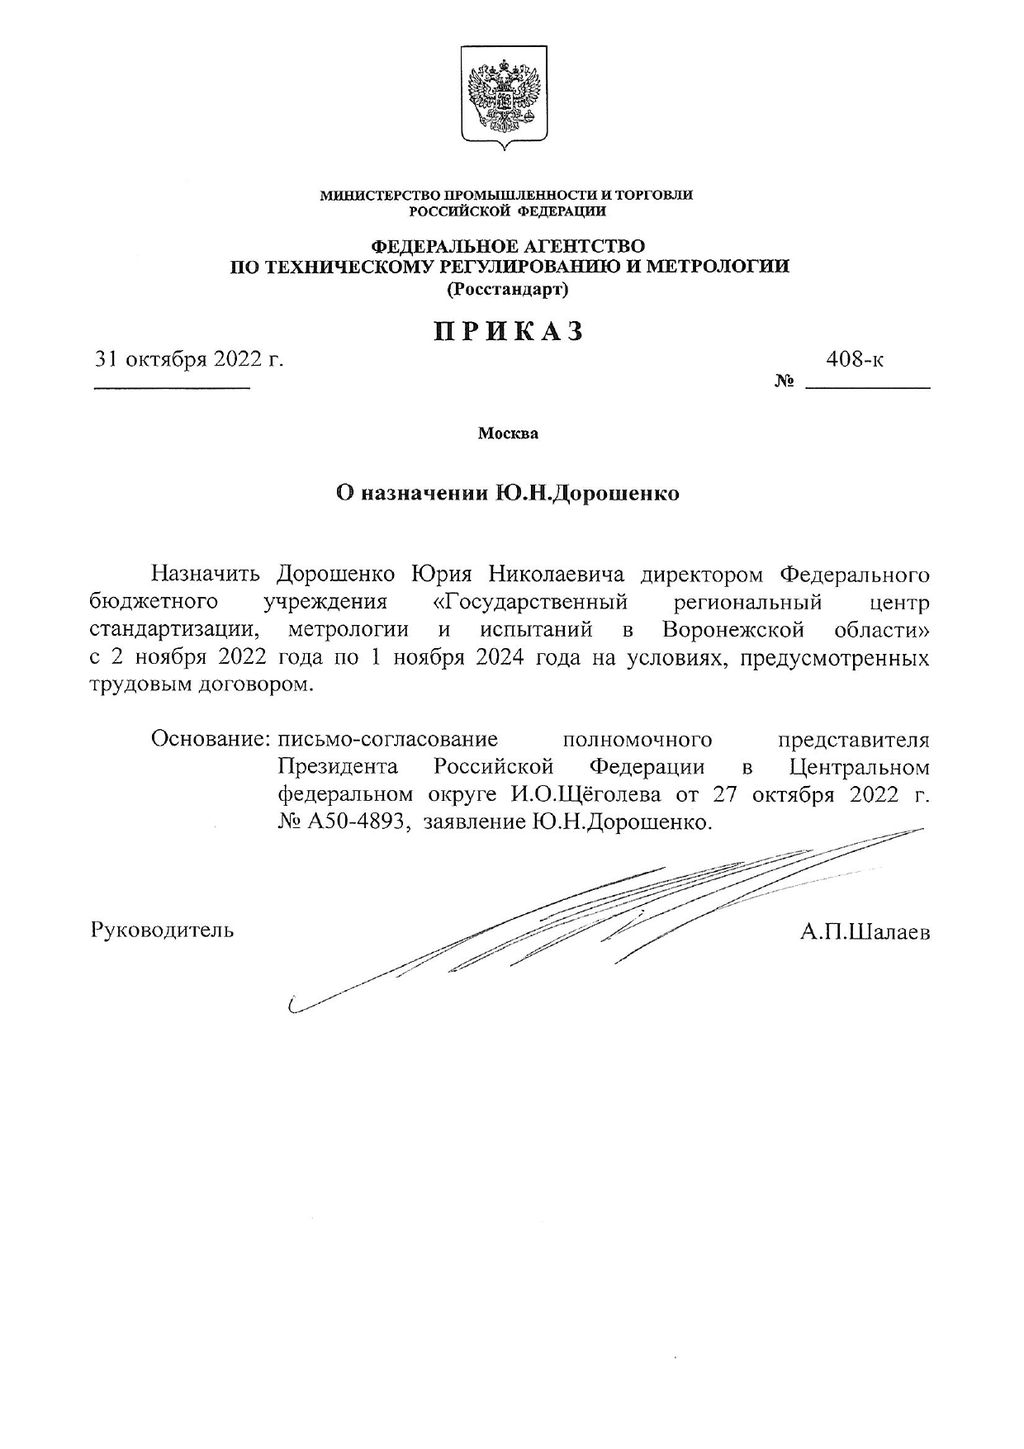 Приказ от 31.10.2022 г. №408-к О назначении Ю.Н.Дорошенко